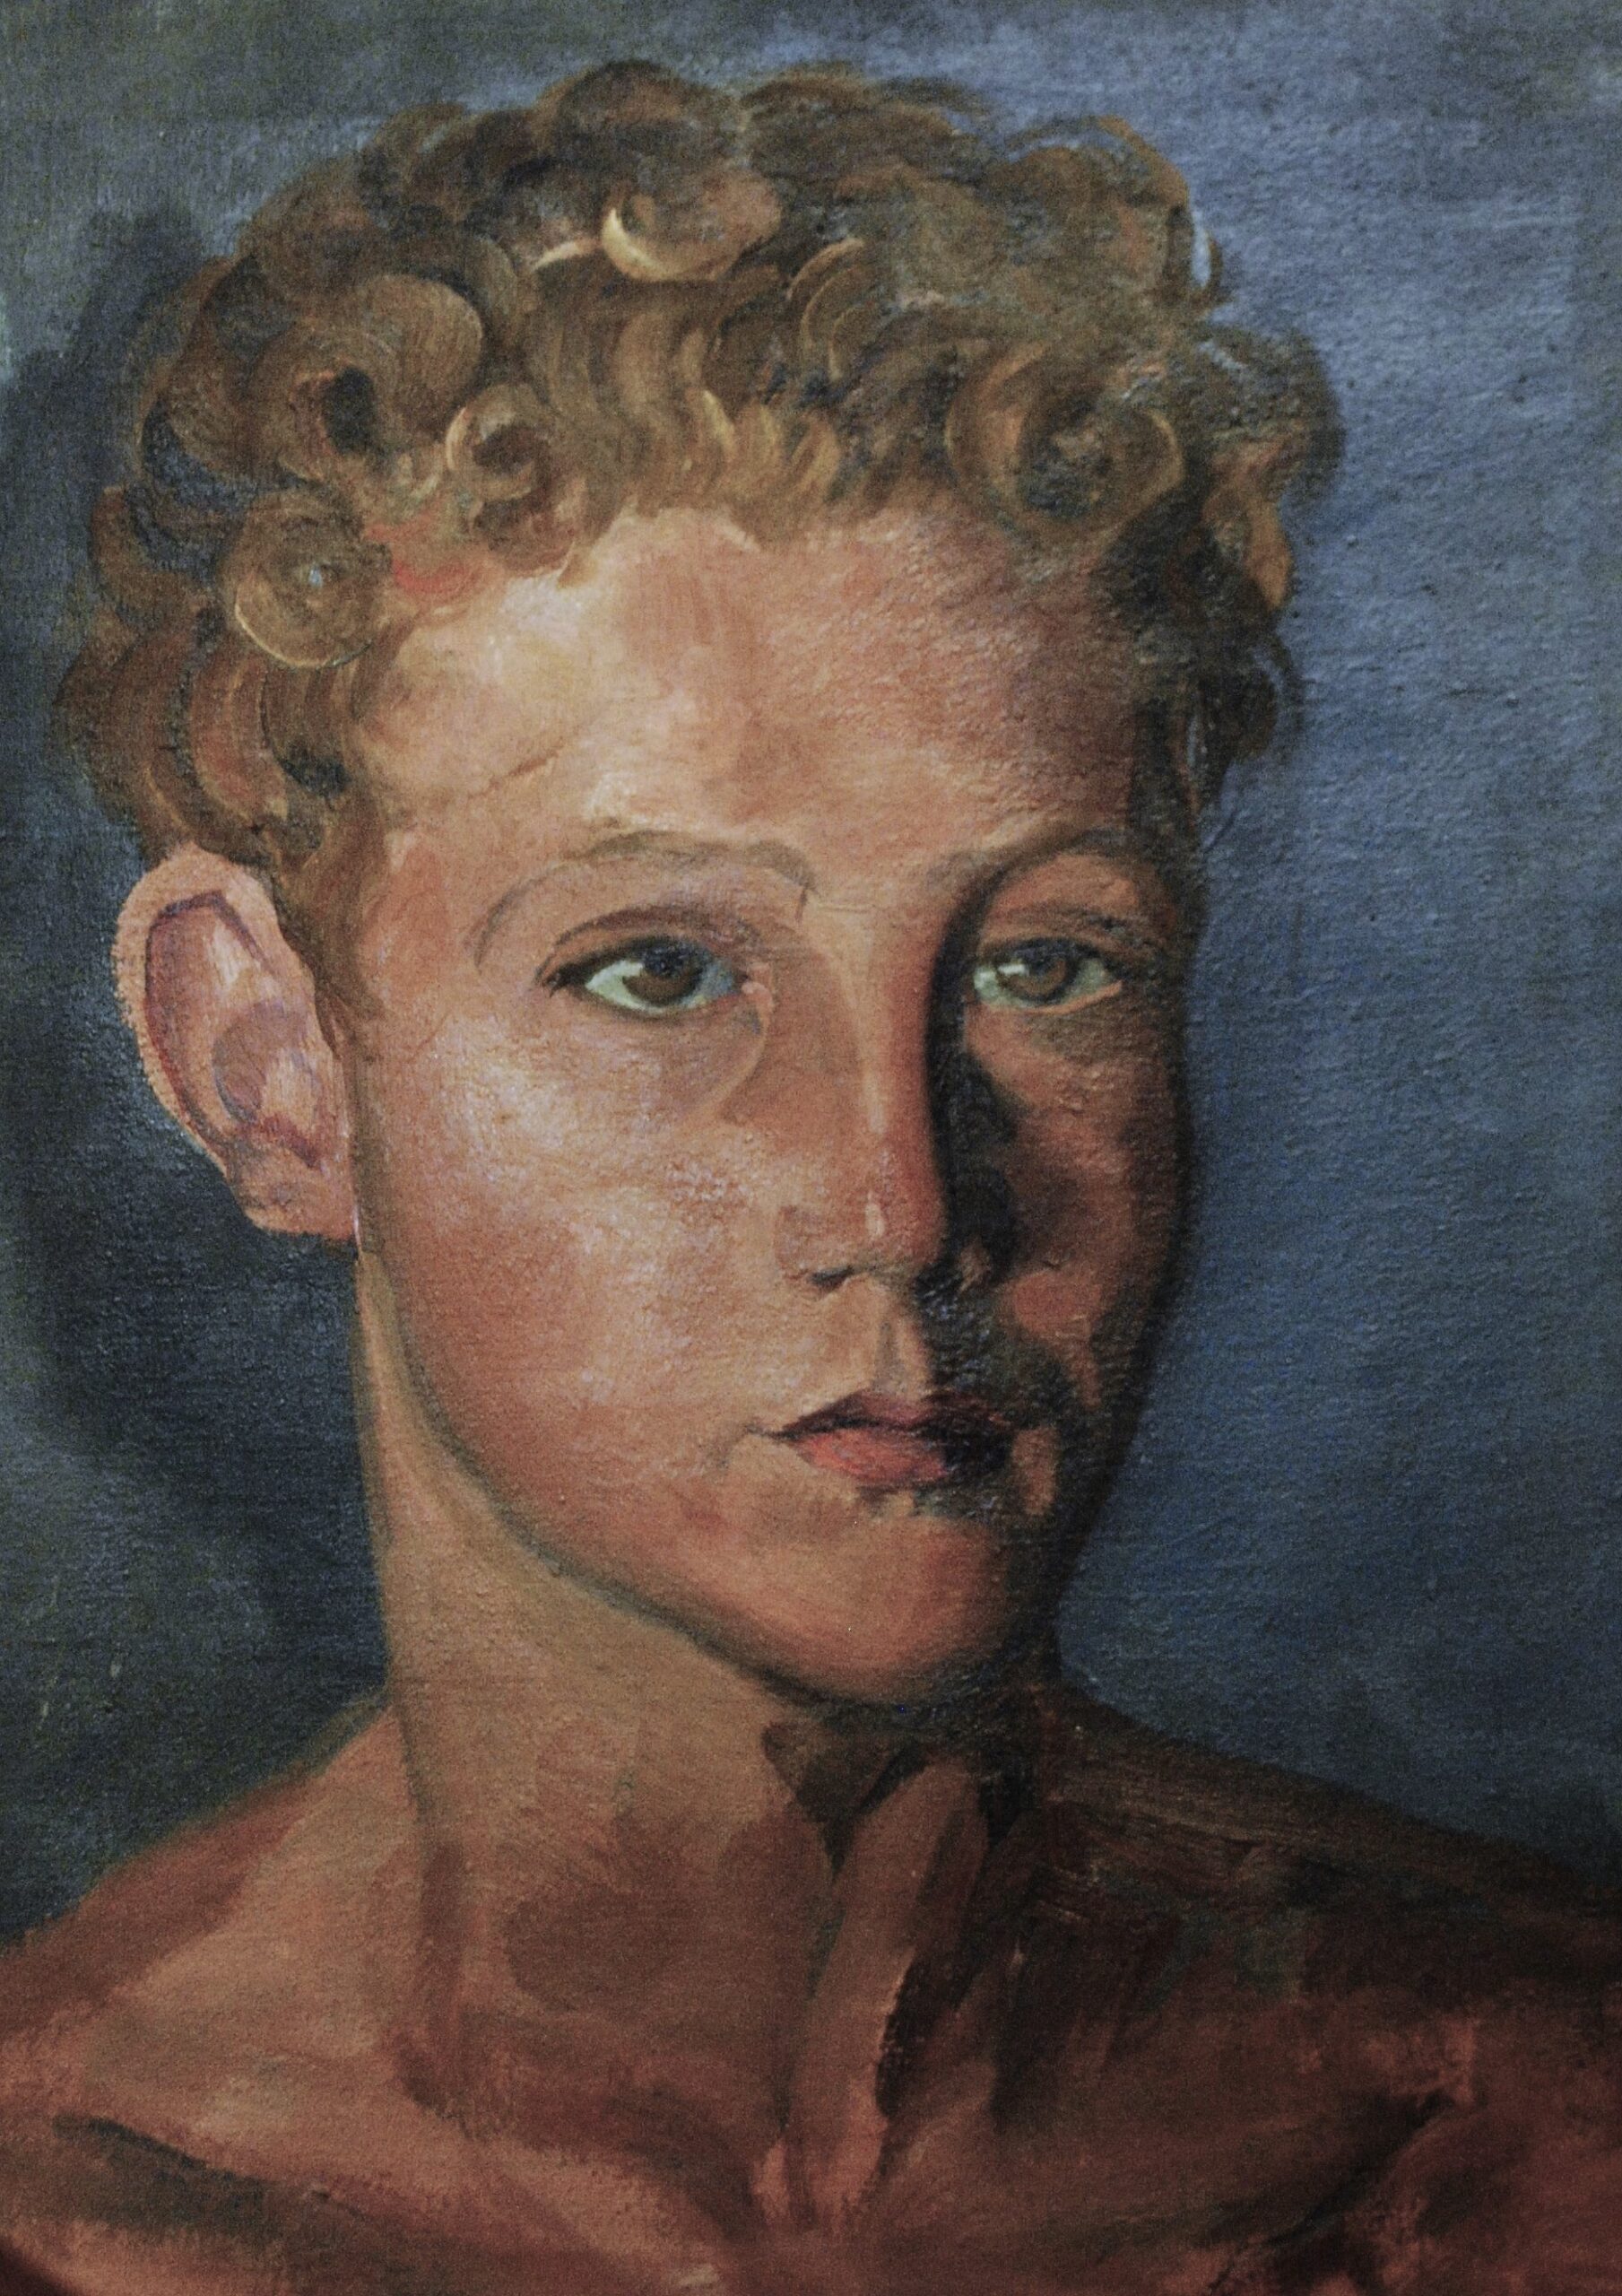 Pintura de José Manaut titulada Ariel jovencito, 1936. Óleo sobre lienzo.